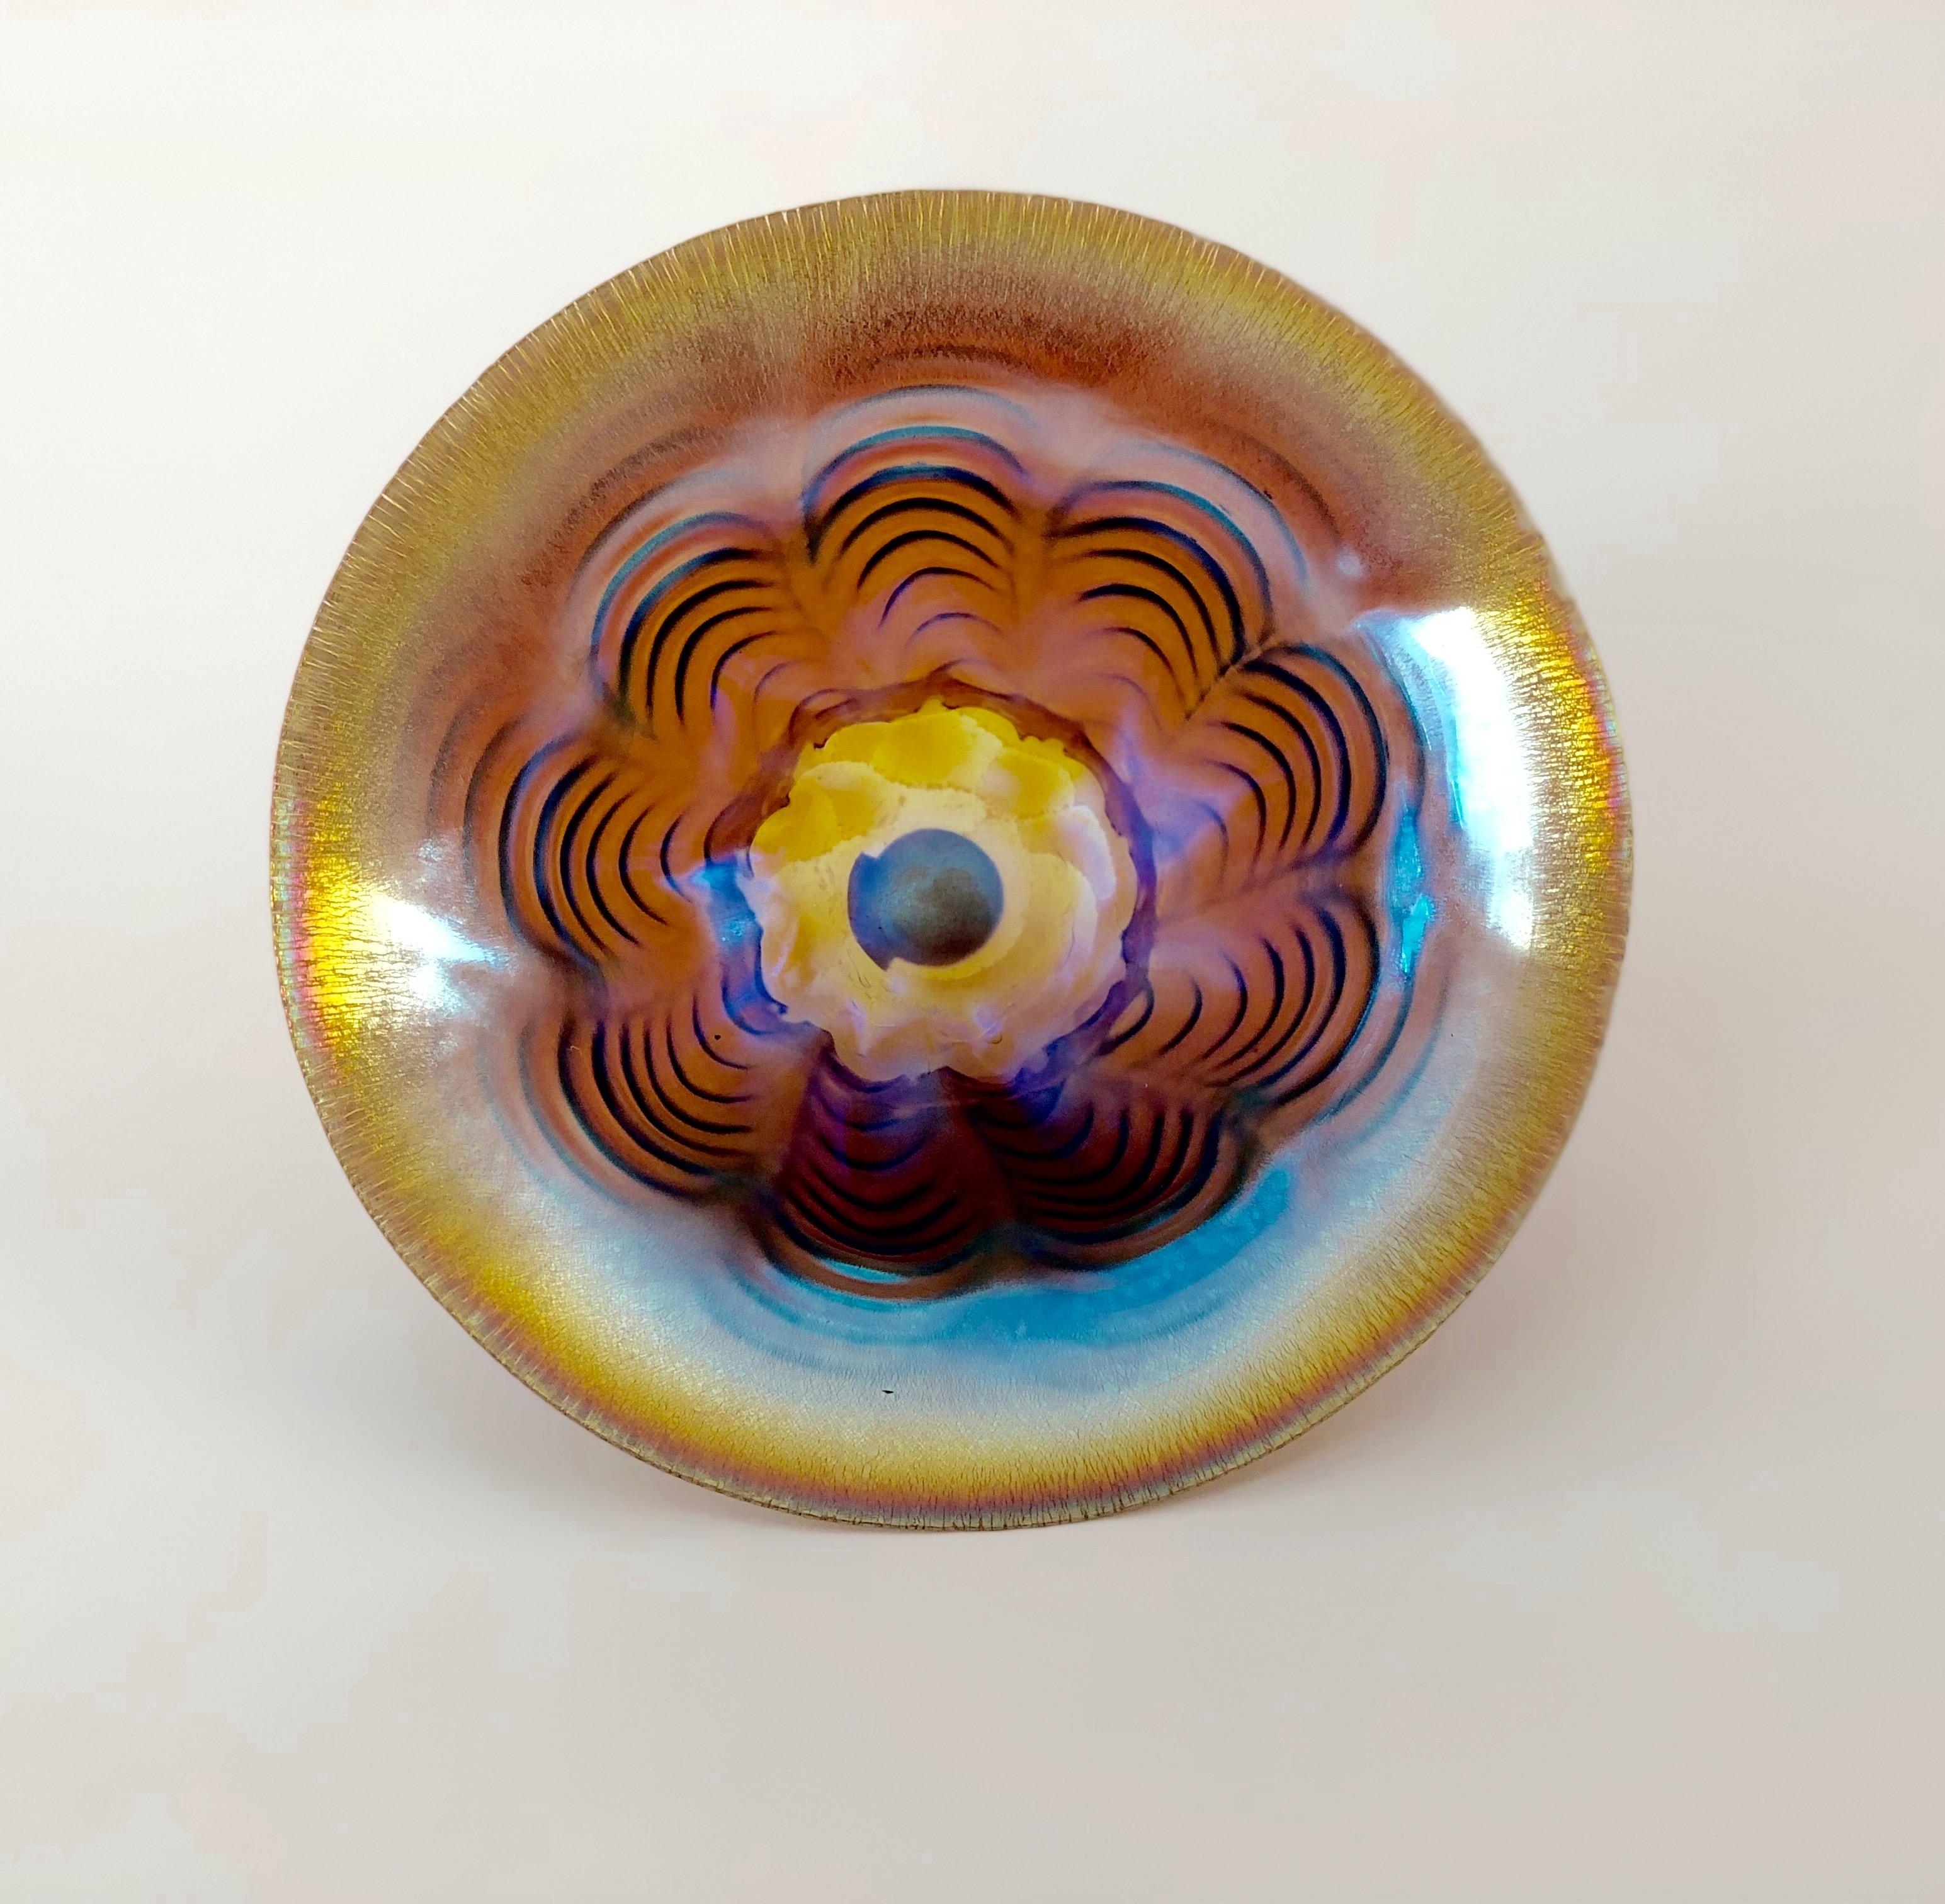 Kleine Art Deco Glasschale aus der Manufaktur WMF, Deutschland. Diese Schale gehört zu der Technik Ikora, die vom Hersteller in den frühen 1920er Jahren patentiert wurde. Mit dieser Technik wird transparentes Glas irisierend gemacht.
Auf dem Boden